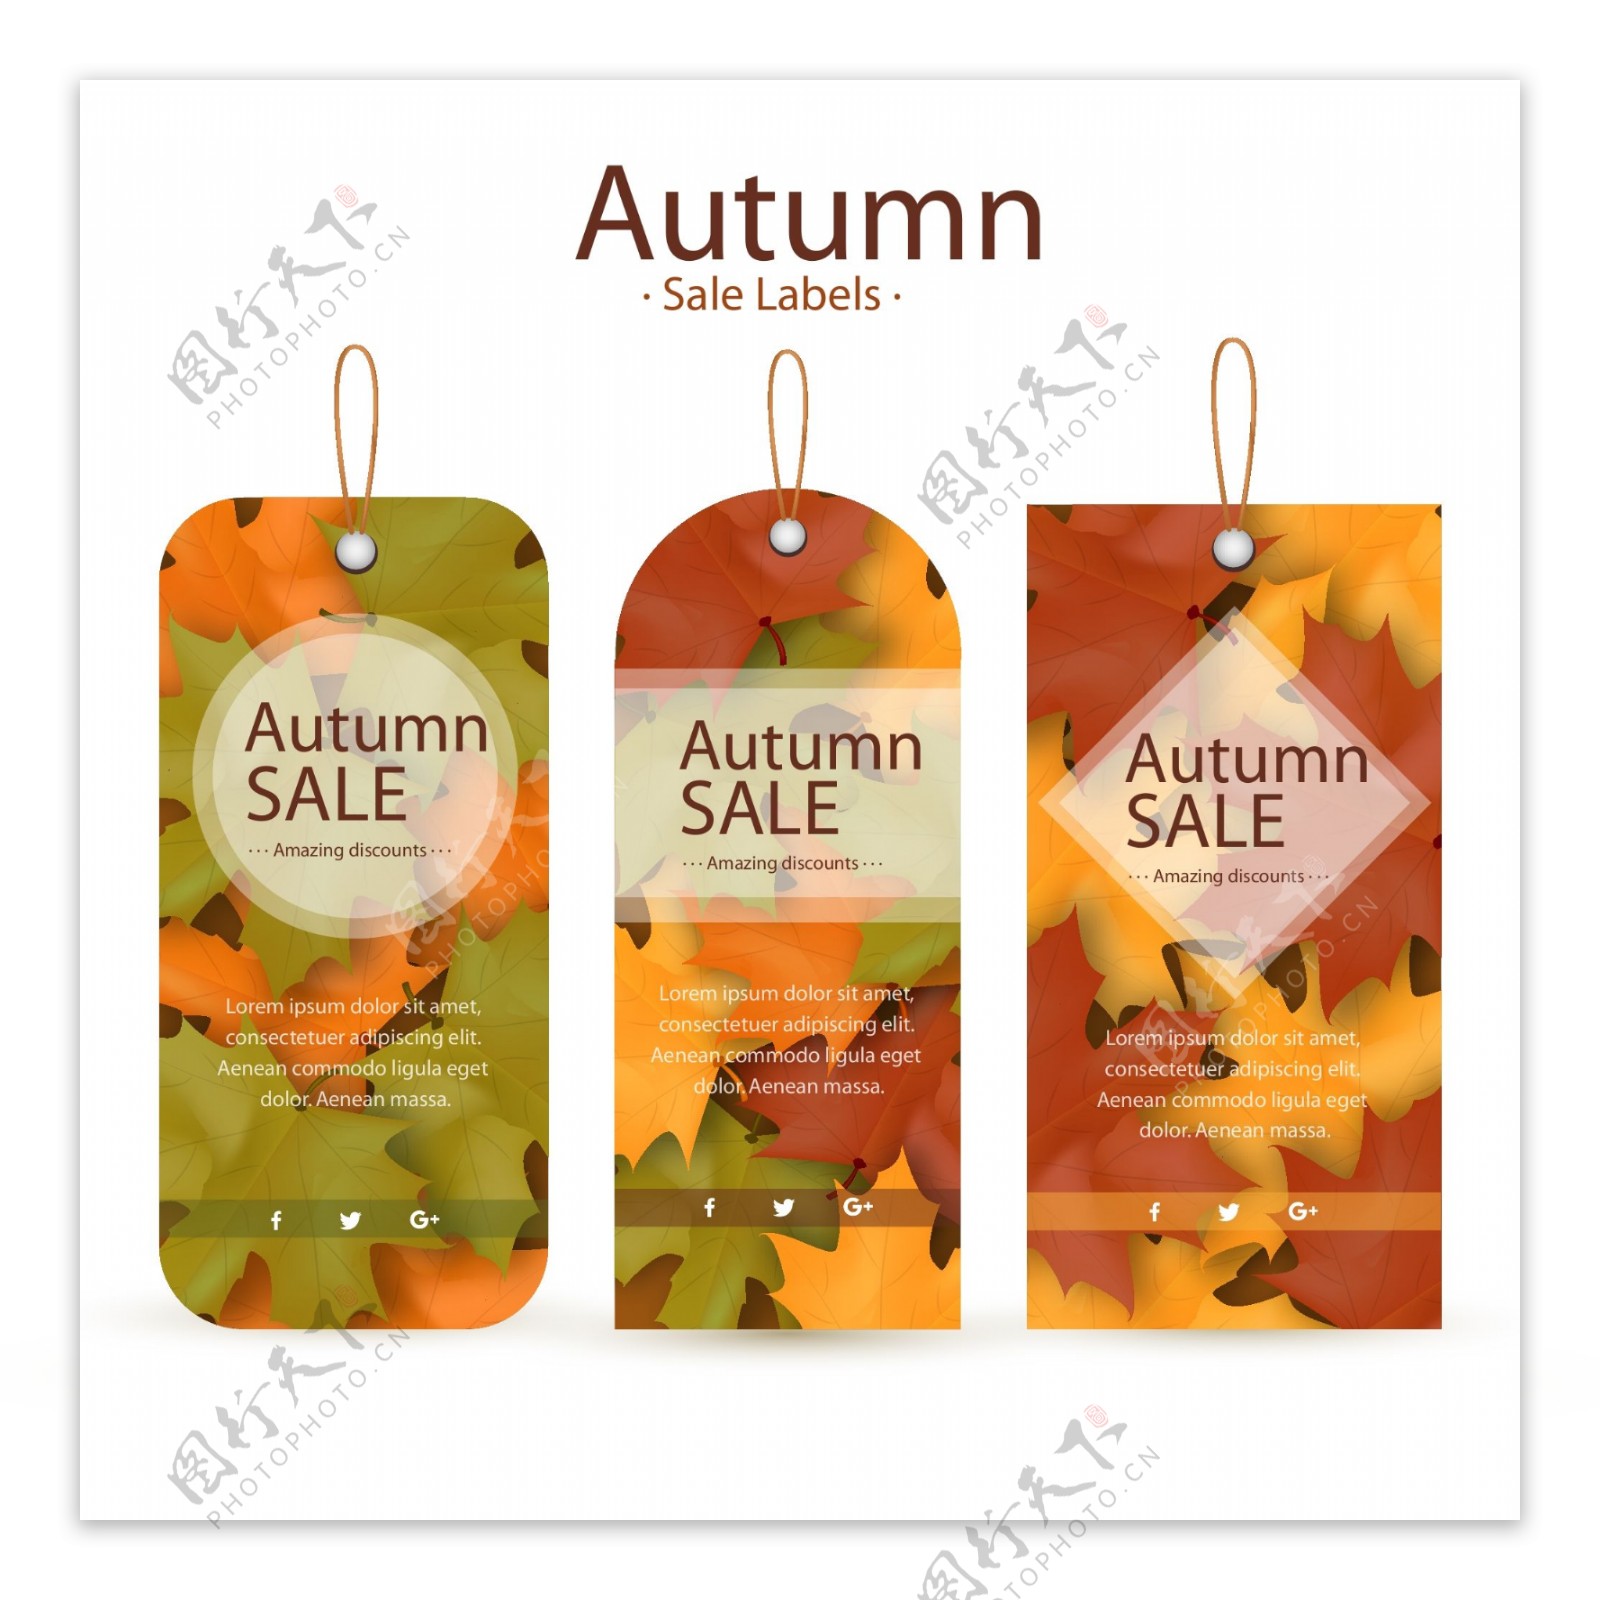 3款秋季树叶装饰吊牌矢量素材